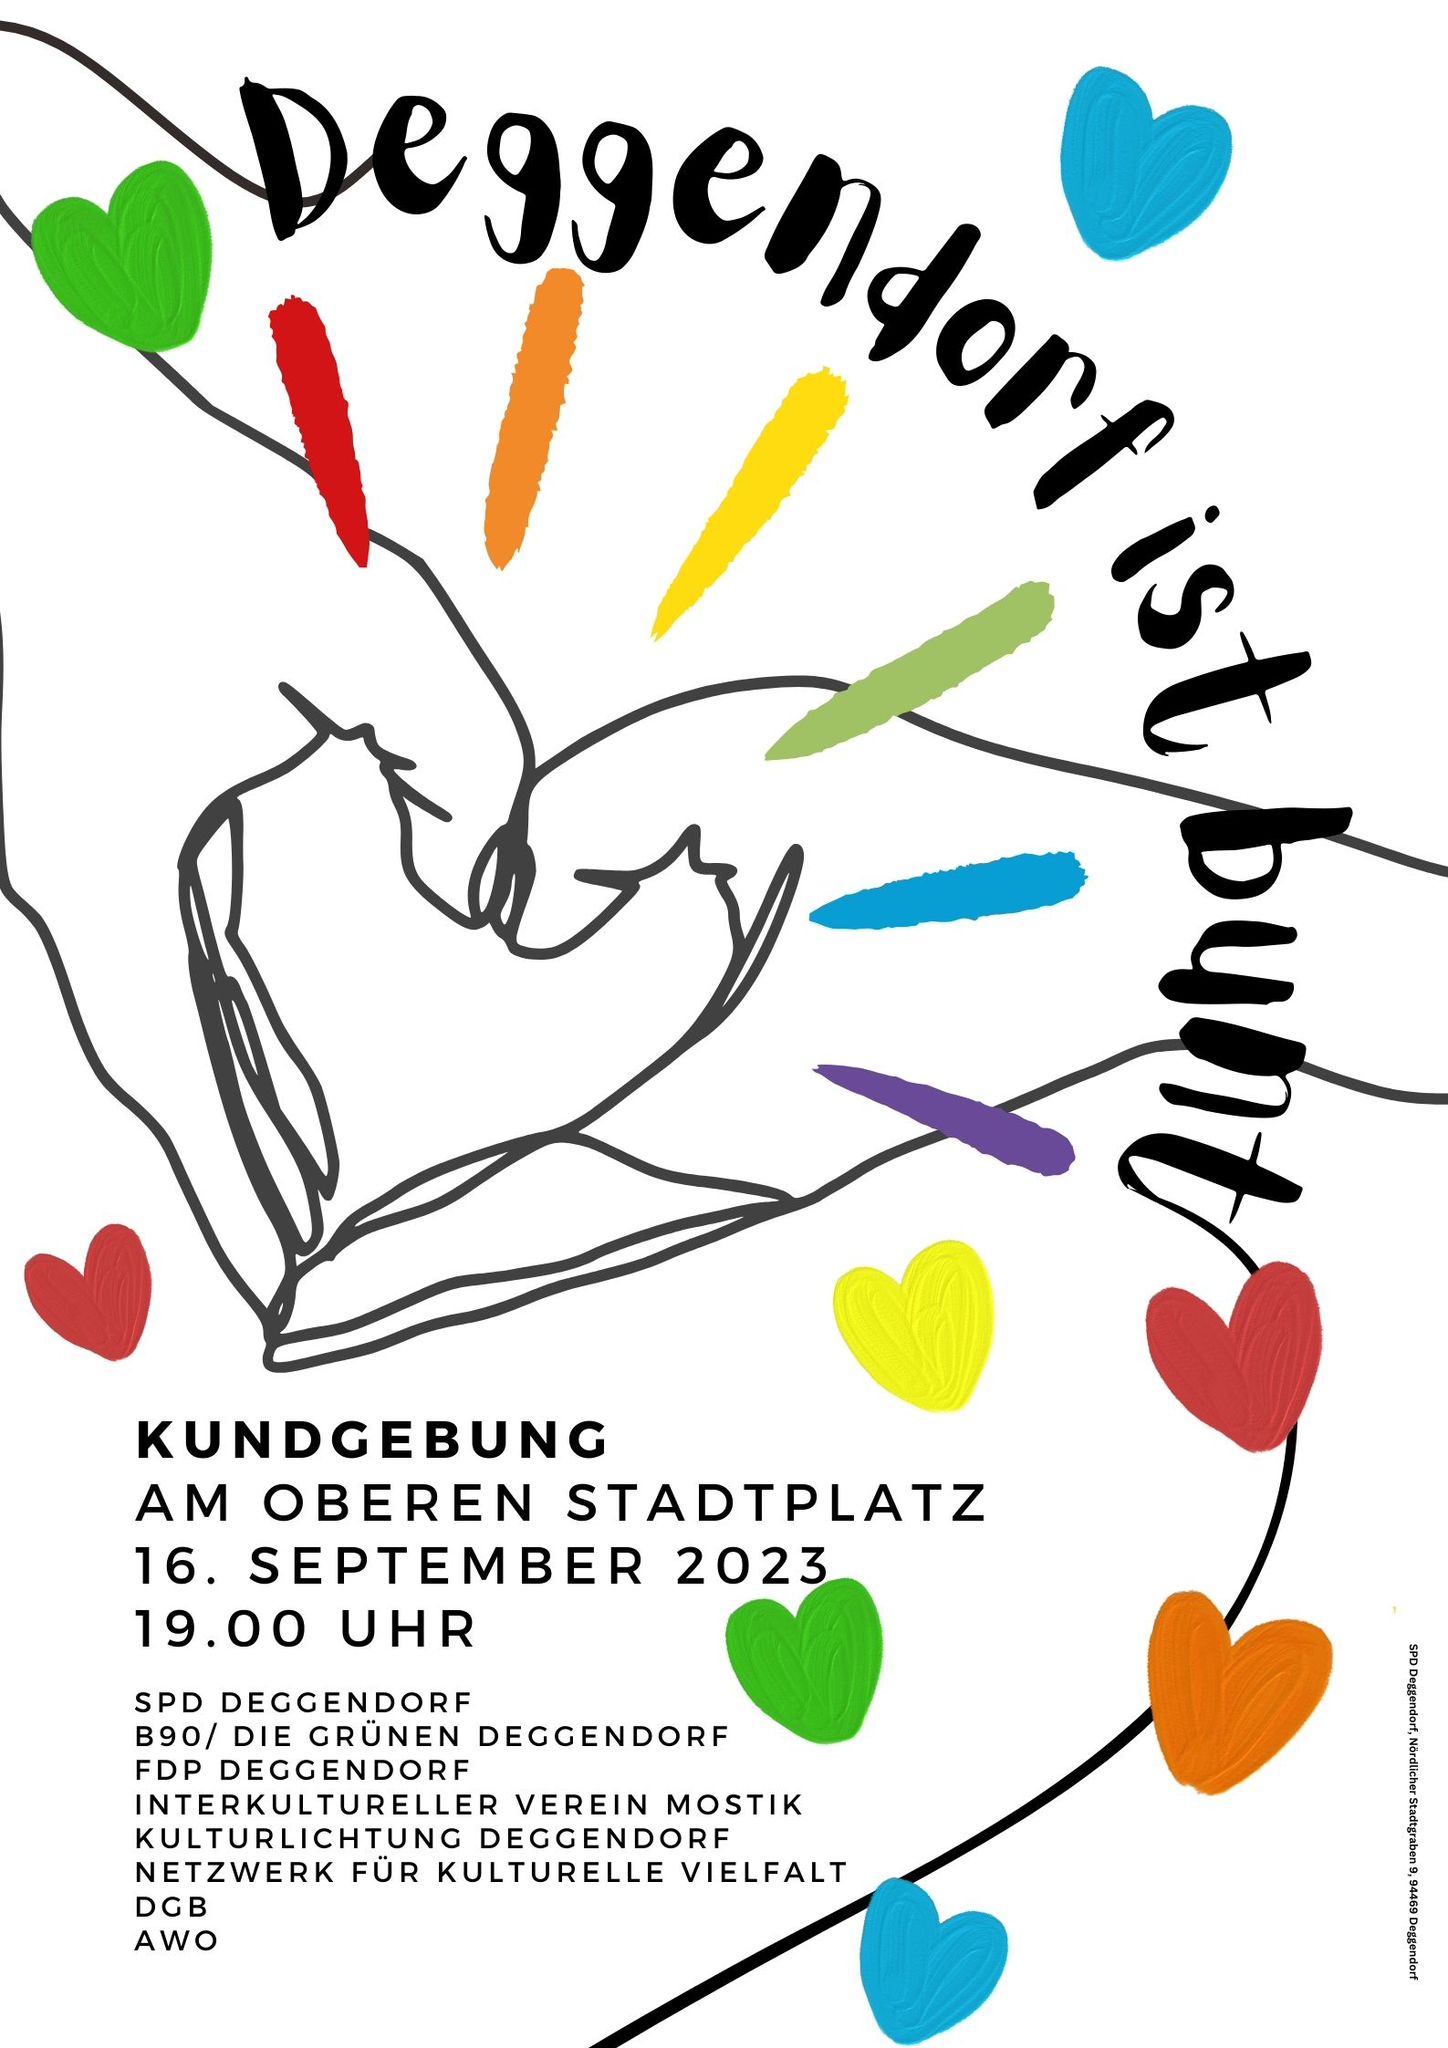 Deggendorf ist bunt - 16.09. 19 Uhr am oberen Stadtplatz - SPD, Grüne, FDP und lokale Vereine laden ein zu zeigen, dass Deggendorf weltoffen ist